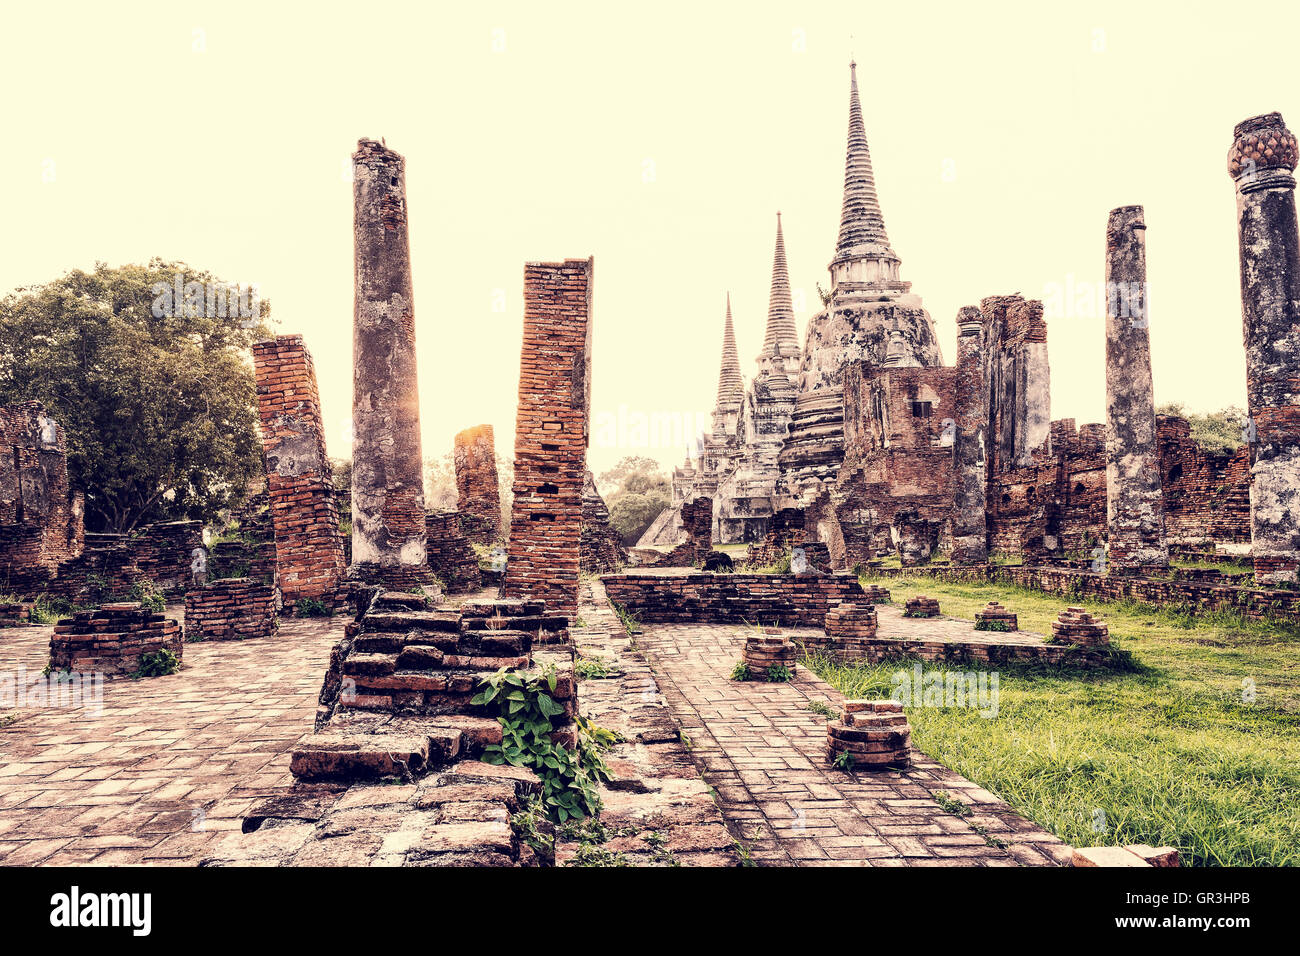 Vintage-Stil Ruinen und antike Architektur Pagode Wat Phra Si Sanphet alte Tempel Sehenswürdigkeiten während des Sonnenuntergangs Stockfoto